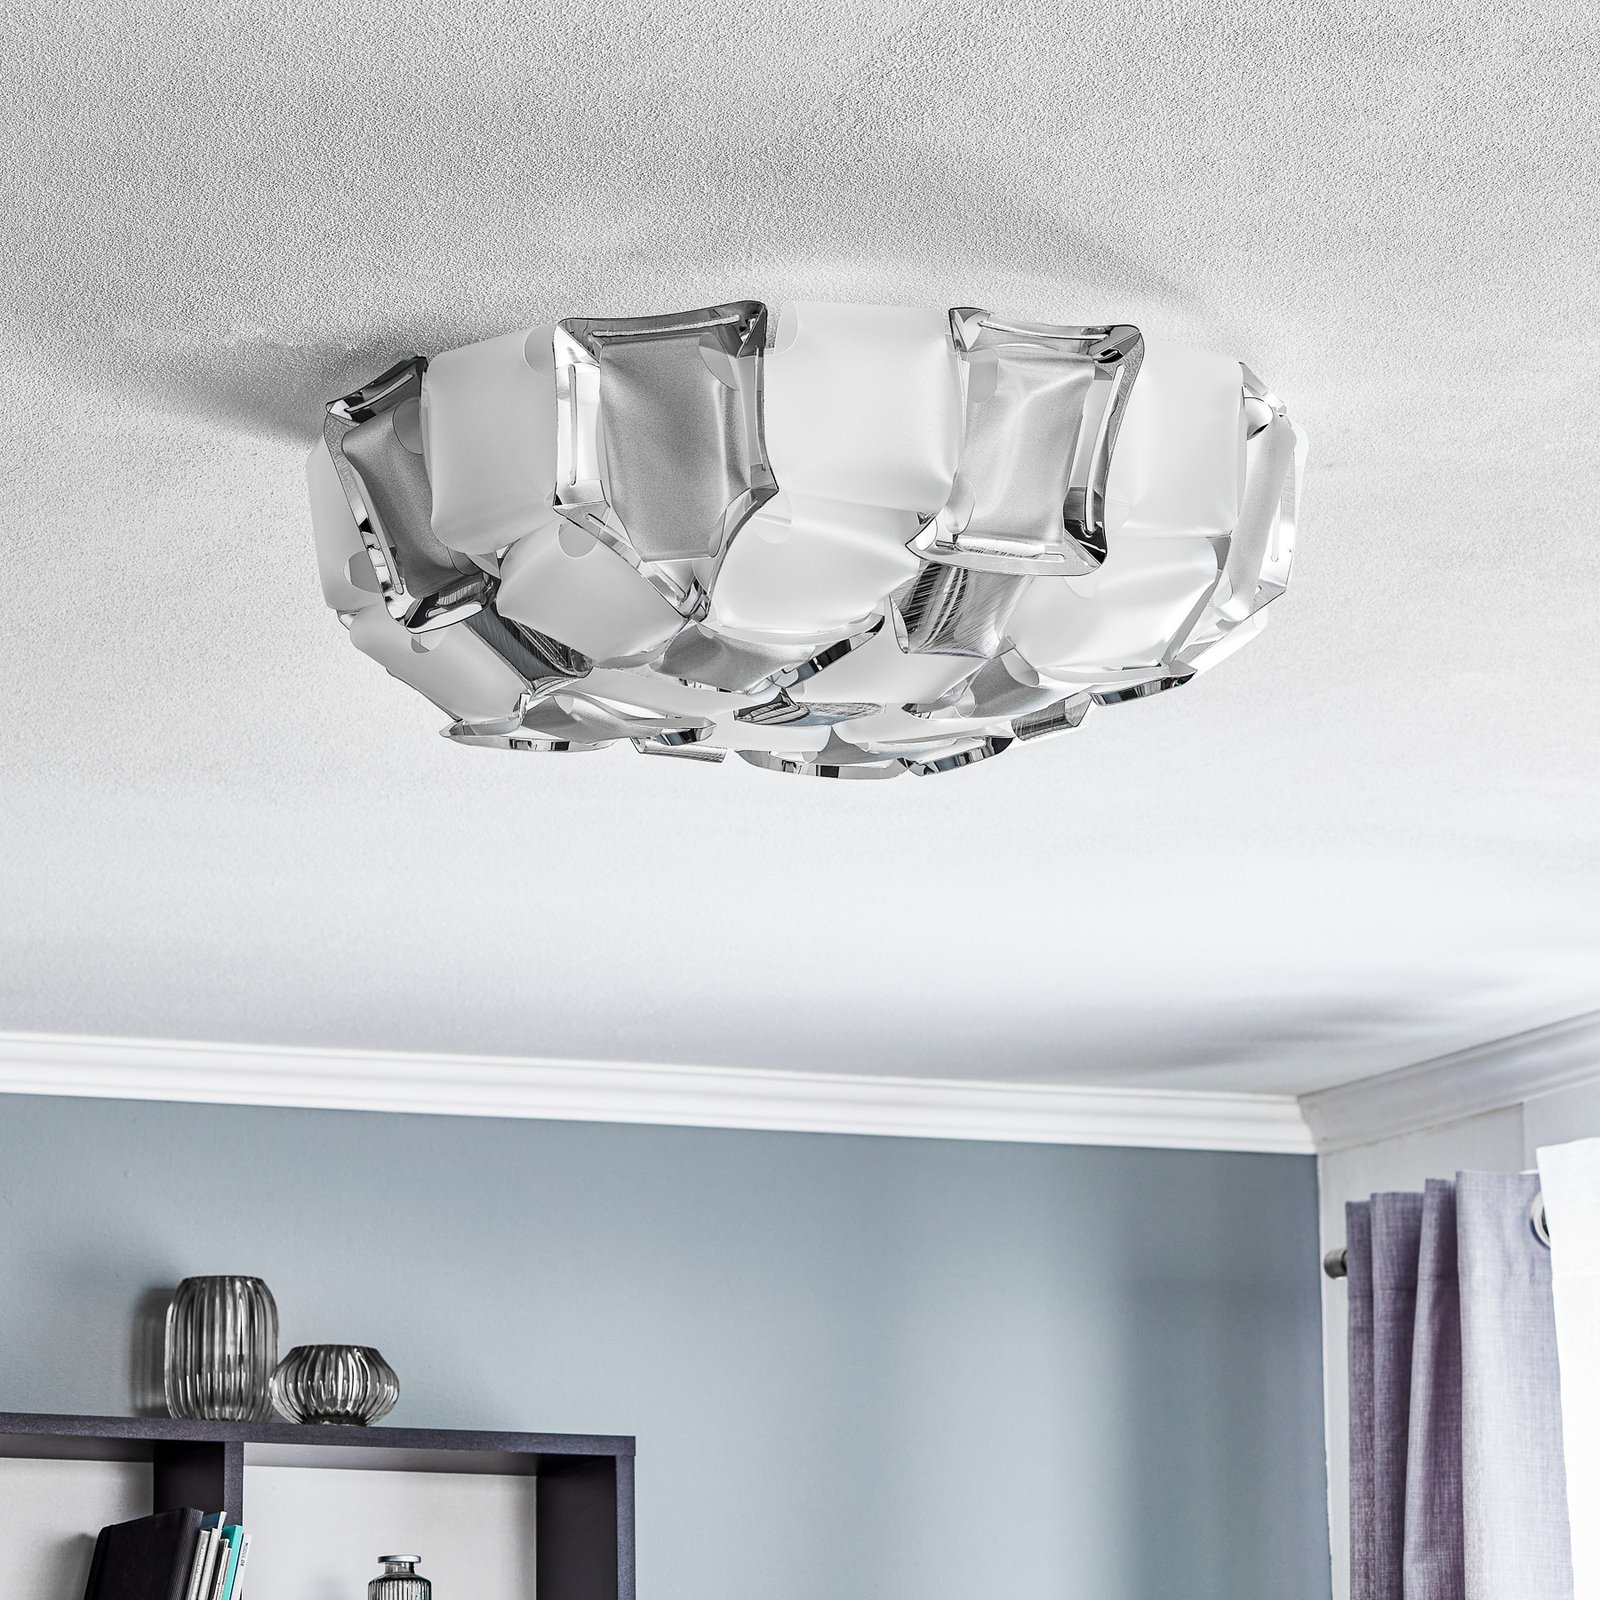 Slamp Mida ceiling light, 50 cm white and platinum